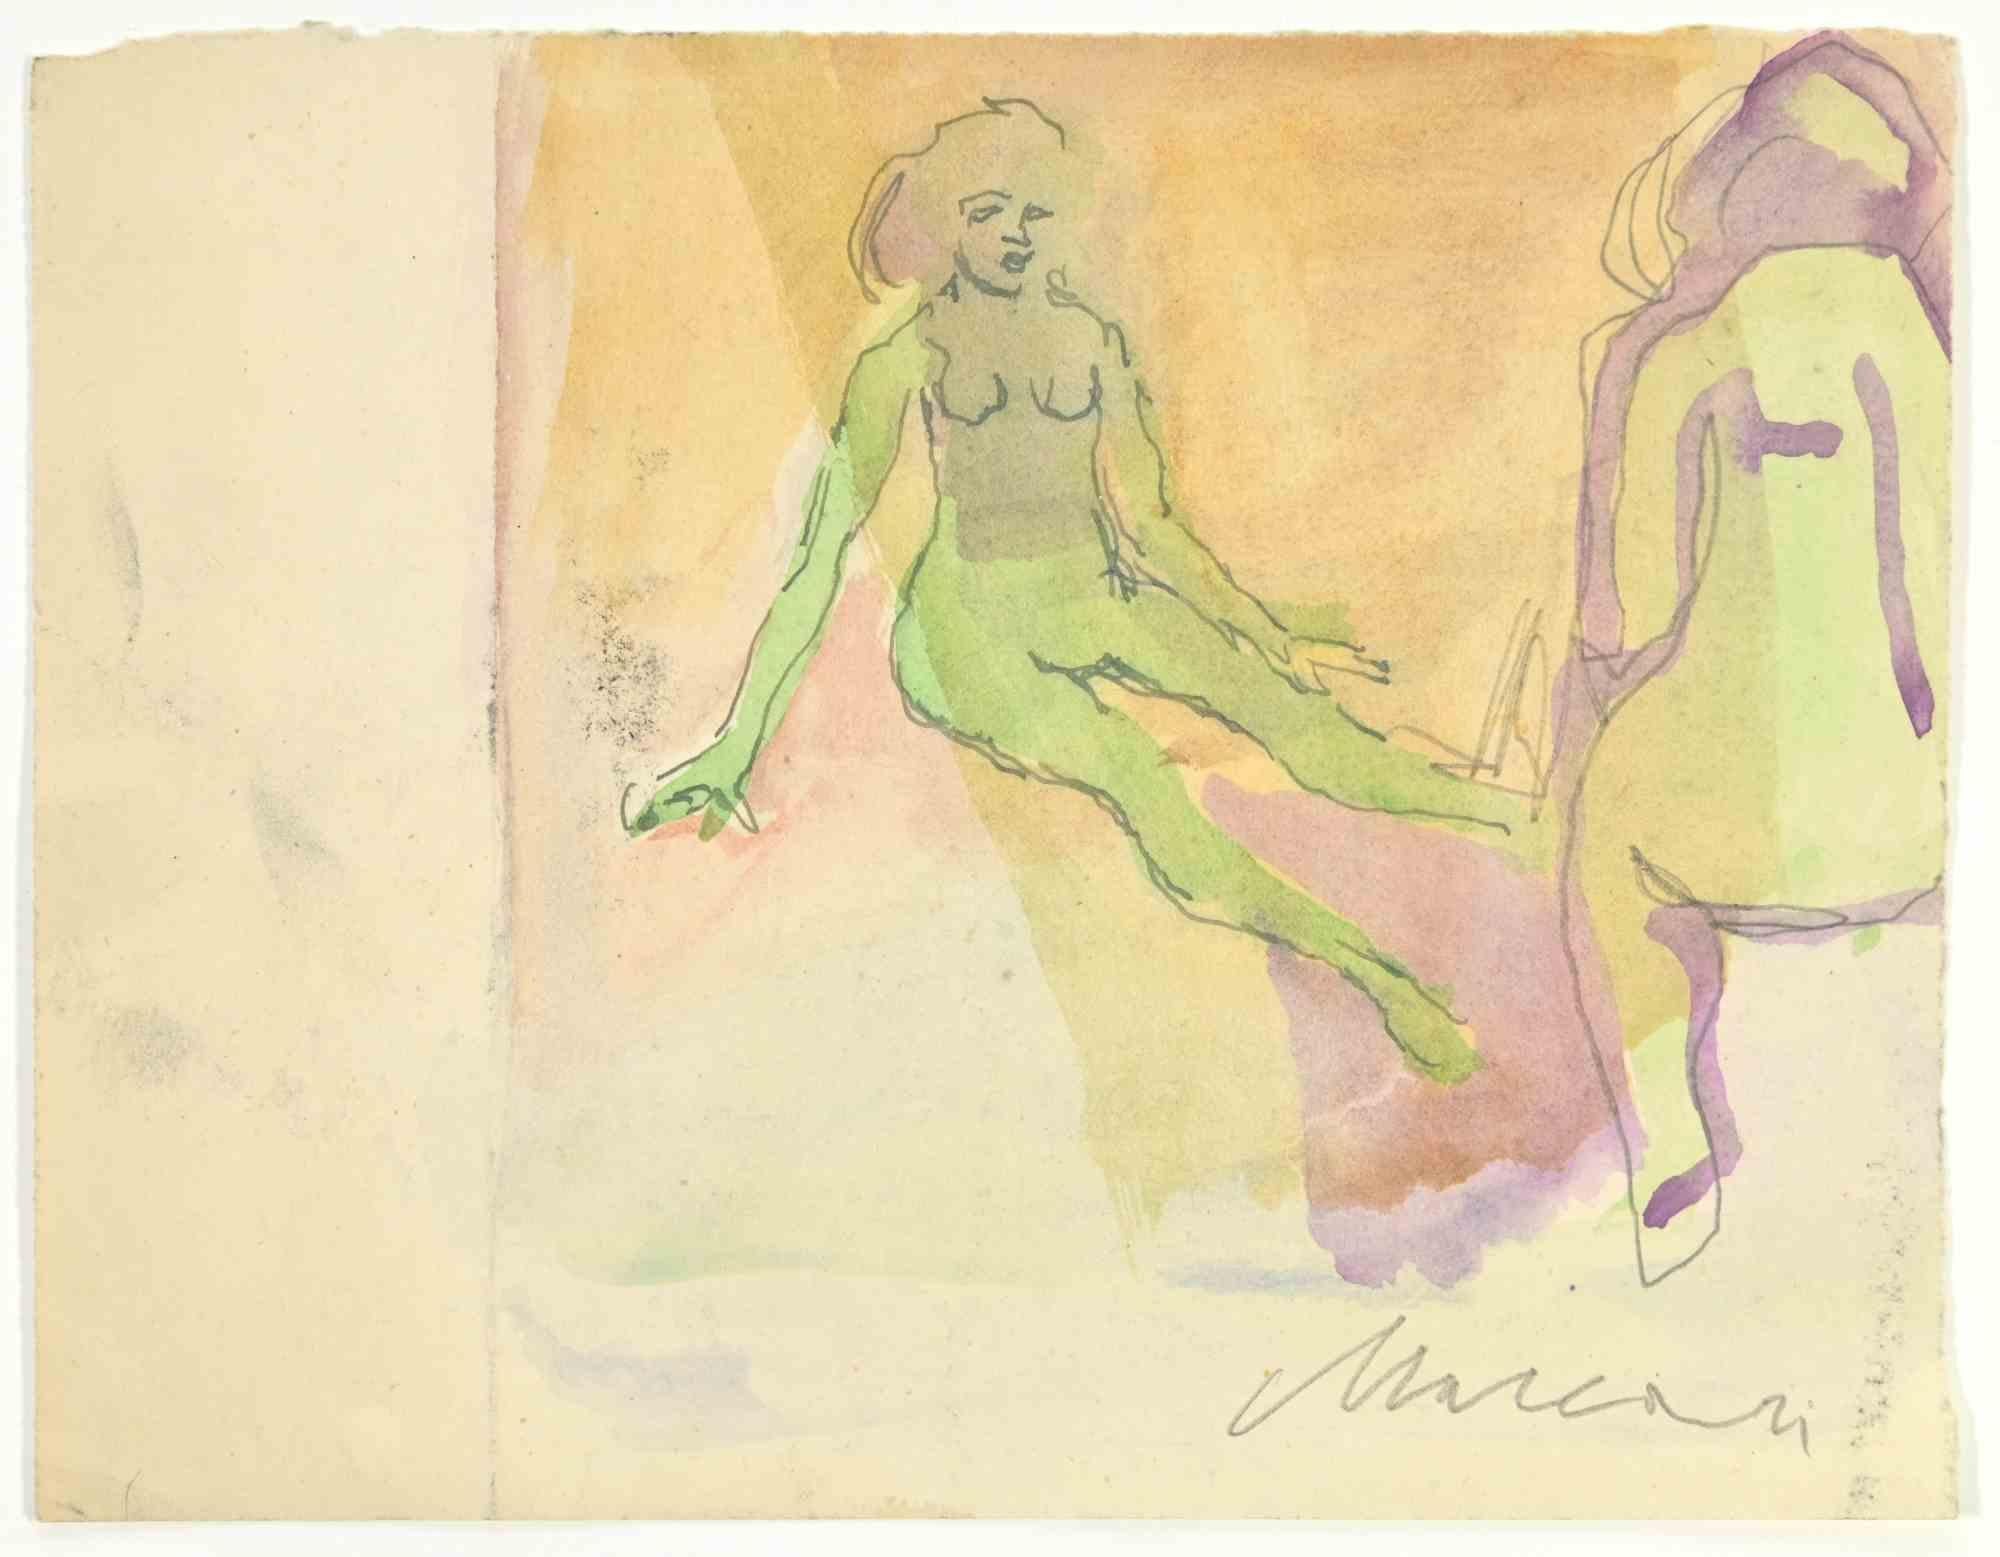 Nudes ist eine Aquarell-Zeichnung von Mino Maccari  (1924-1989) in den 1950er Jahren.

Handsigniert auf der Unterseite.

Guter Zustand.

Mino Maccari (Siena, 1924-Rom, 16. Juni 1989) war ein italienischer Schriftsteller, Maler, Graveur und